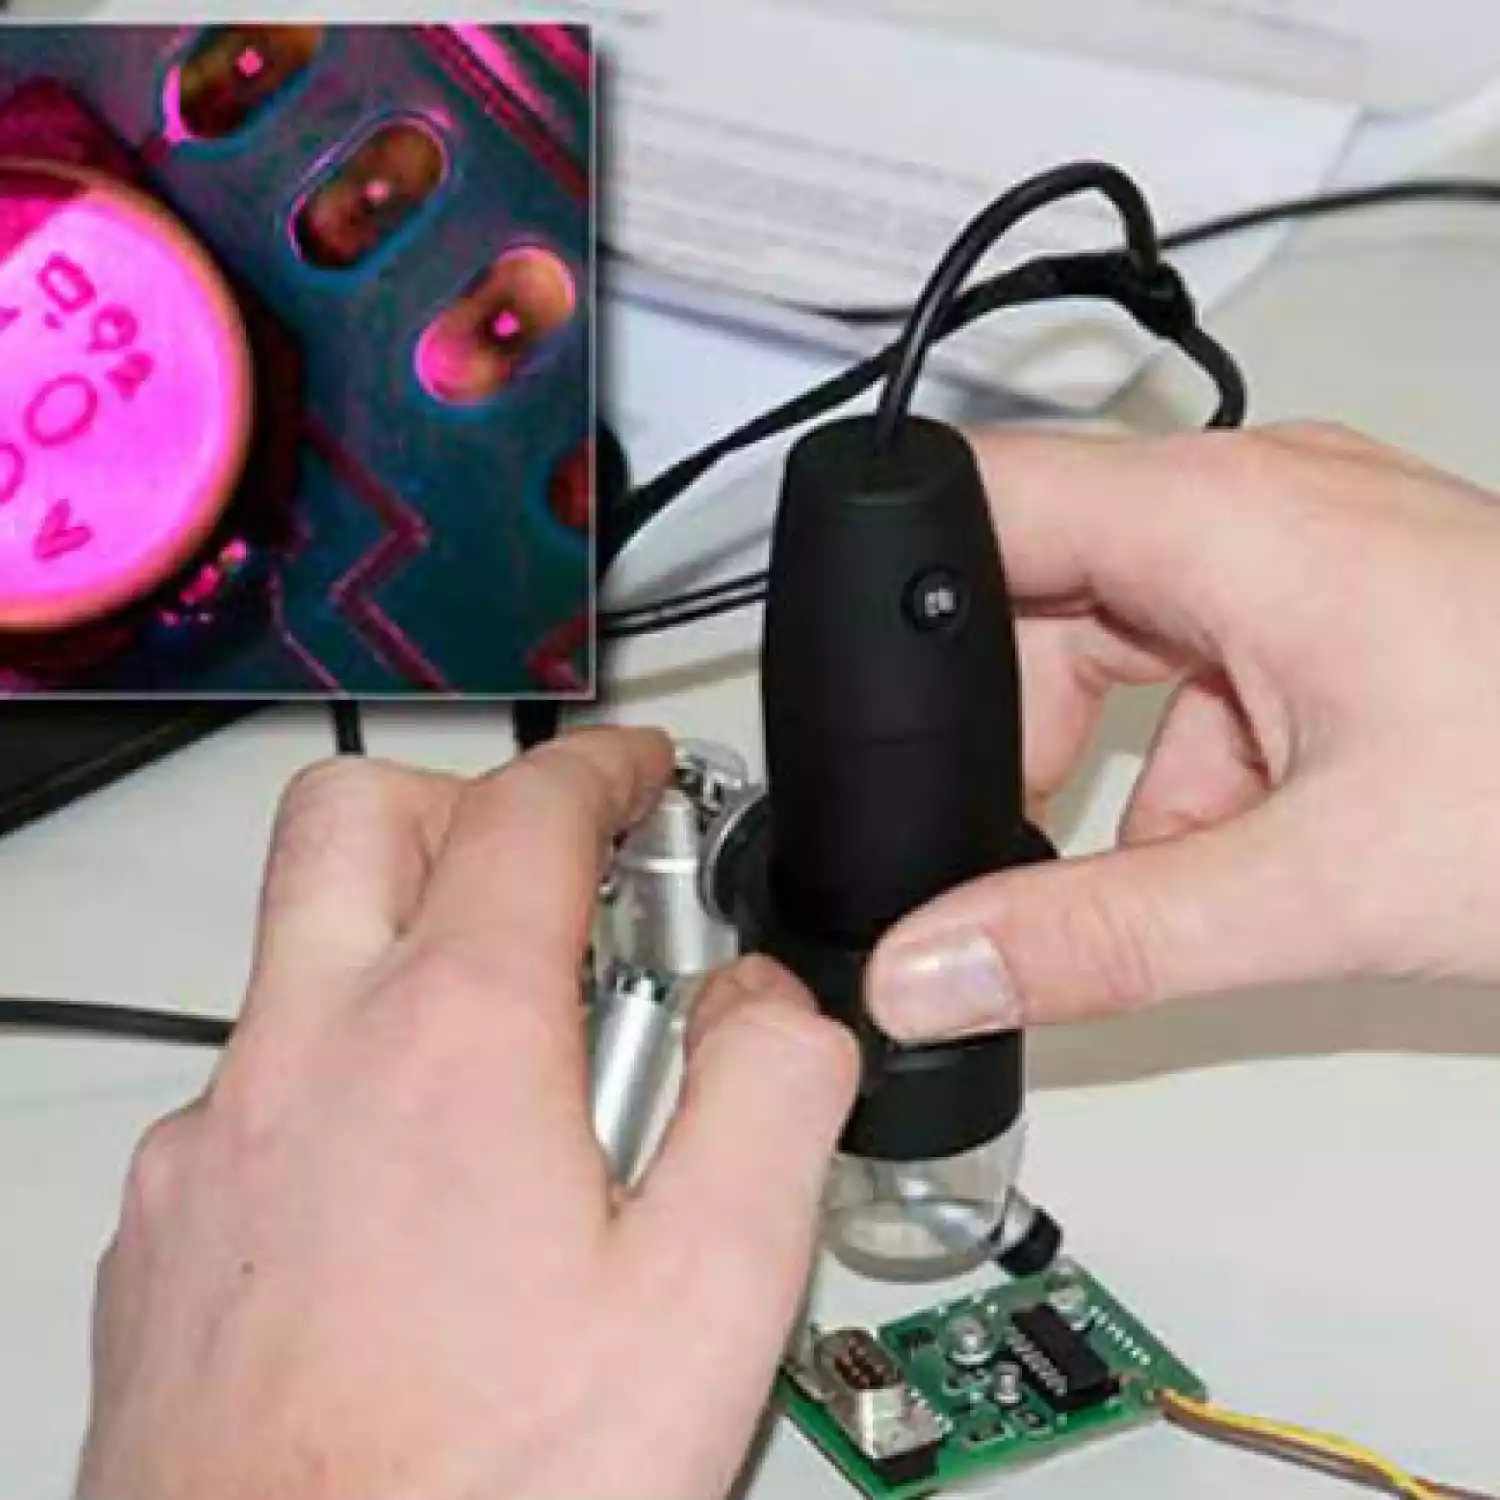 USB-микроскоп PCE MM 200 UV c ультрафиолетовой подсветкой - 5